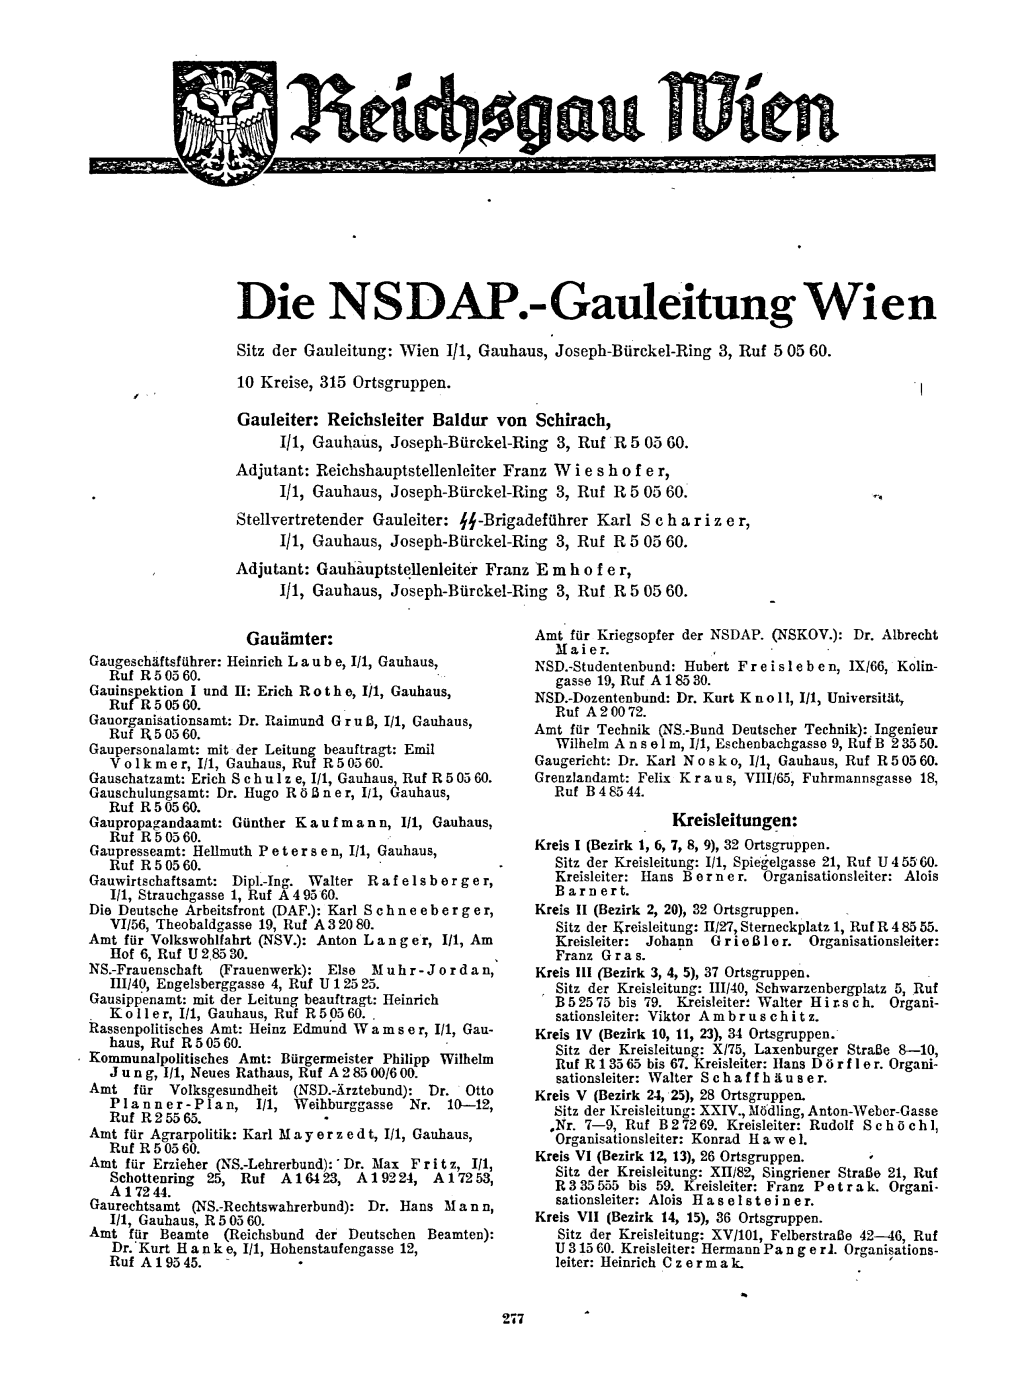 Wien NSDAP Und Staatliche Verwaltung